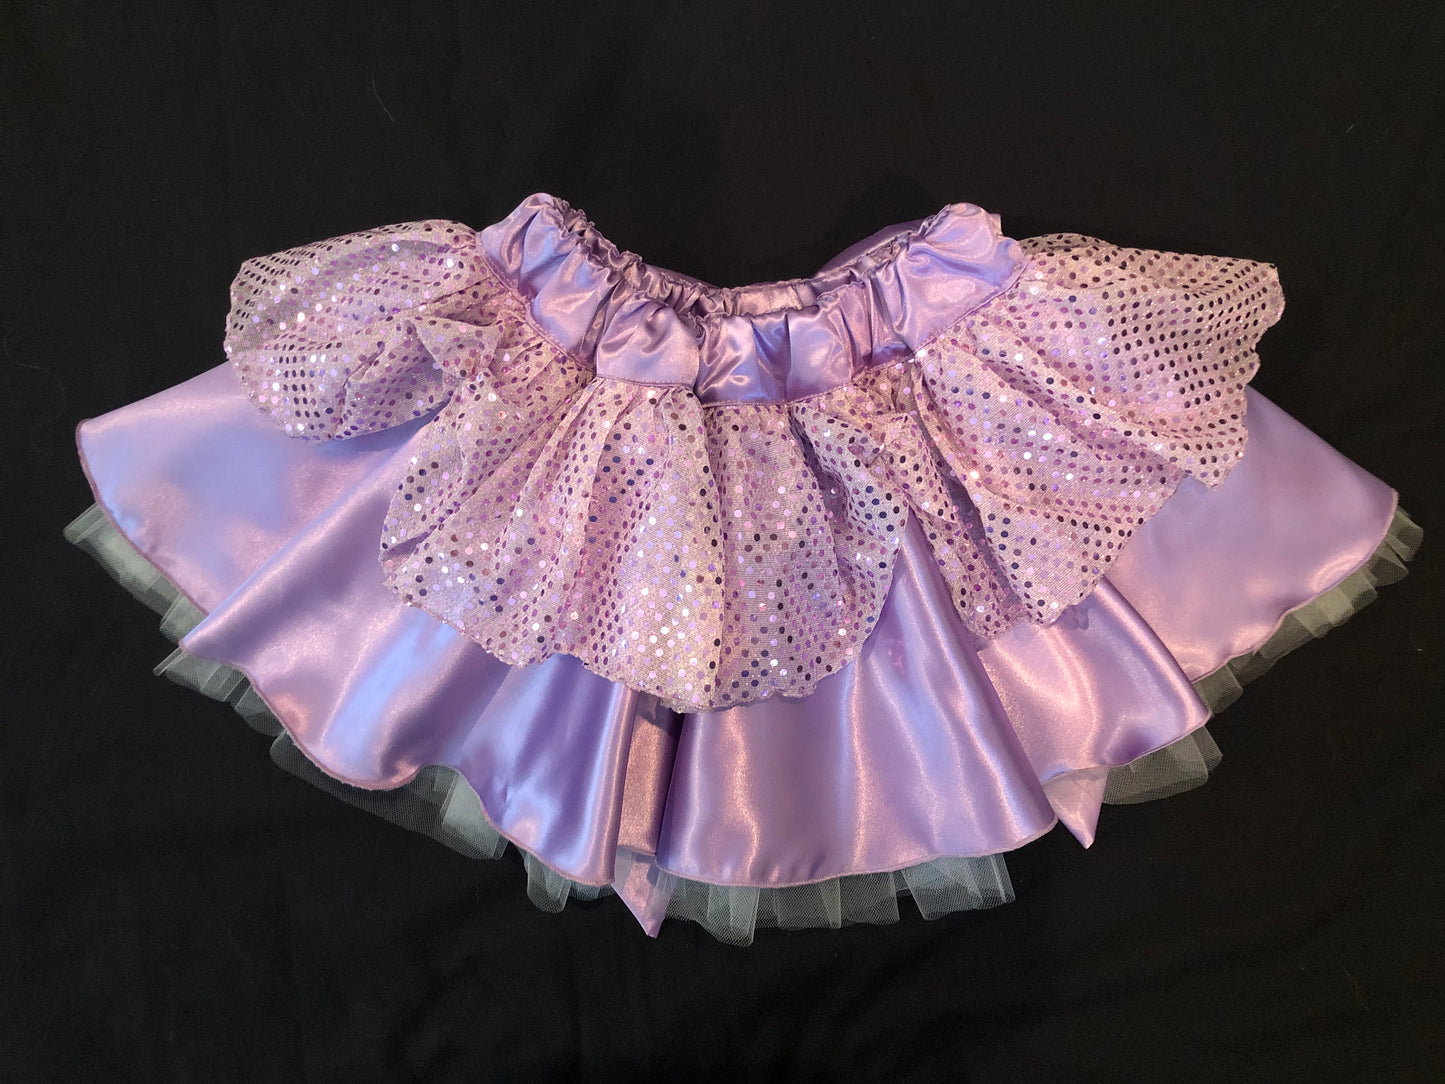 Little Princess Children's Tutu Skirt in Lovely Lavender